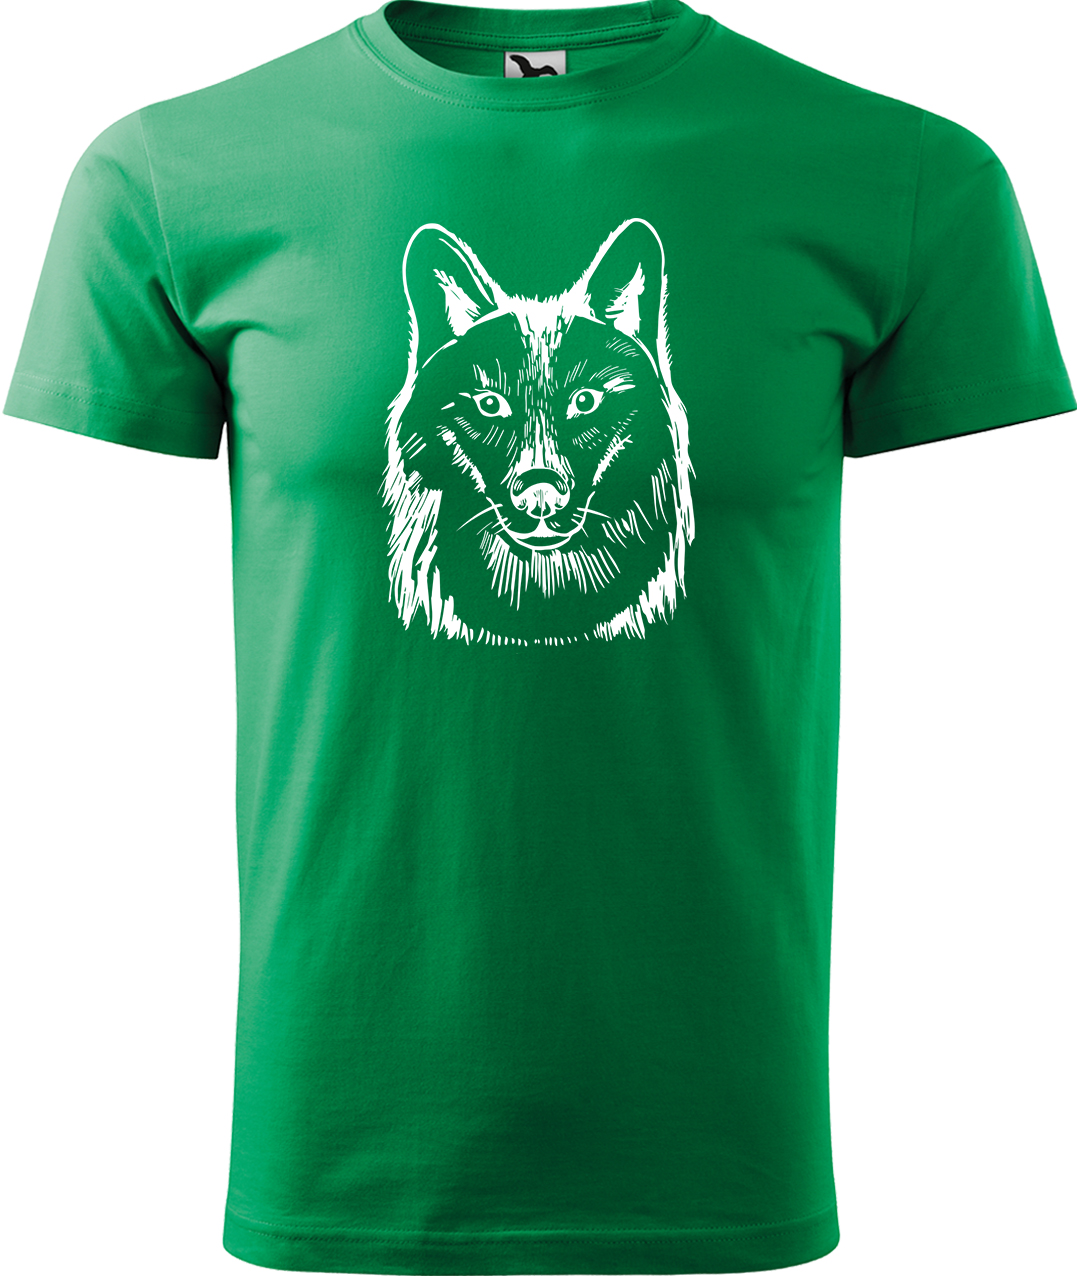 Pánské tričko s vlkem - Kresba vlka Velikost: M, Barva: Středně zelená (16), Střih: pánský